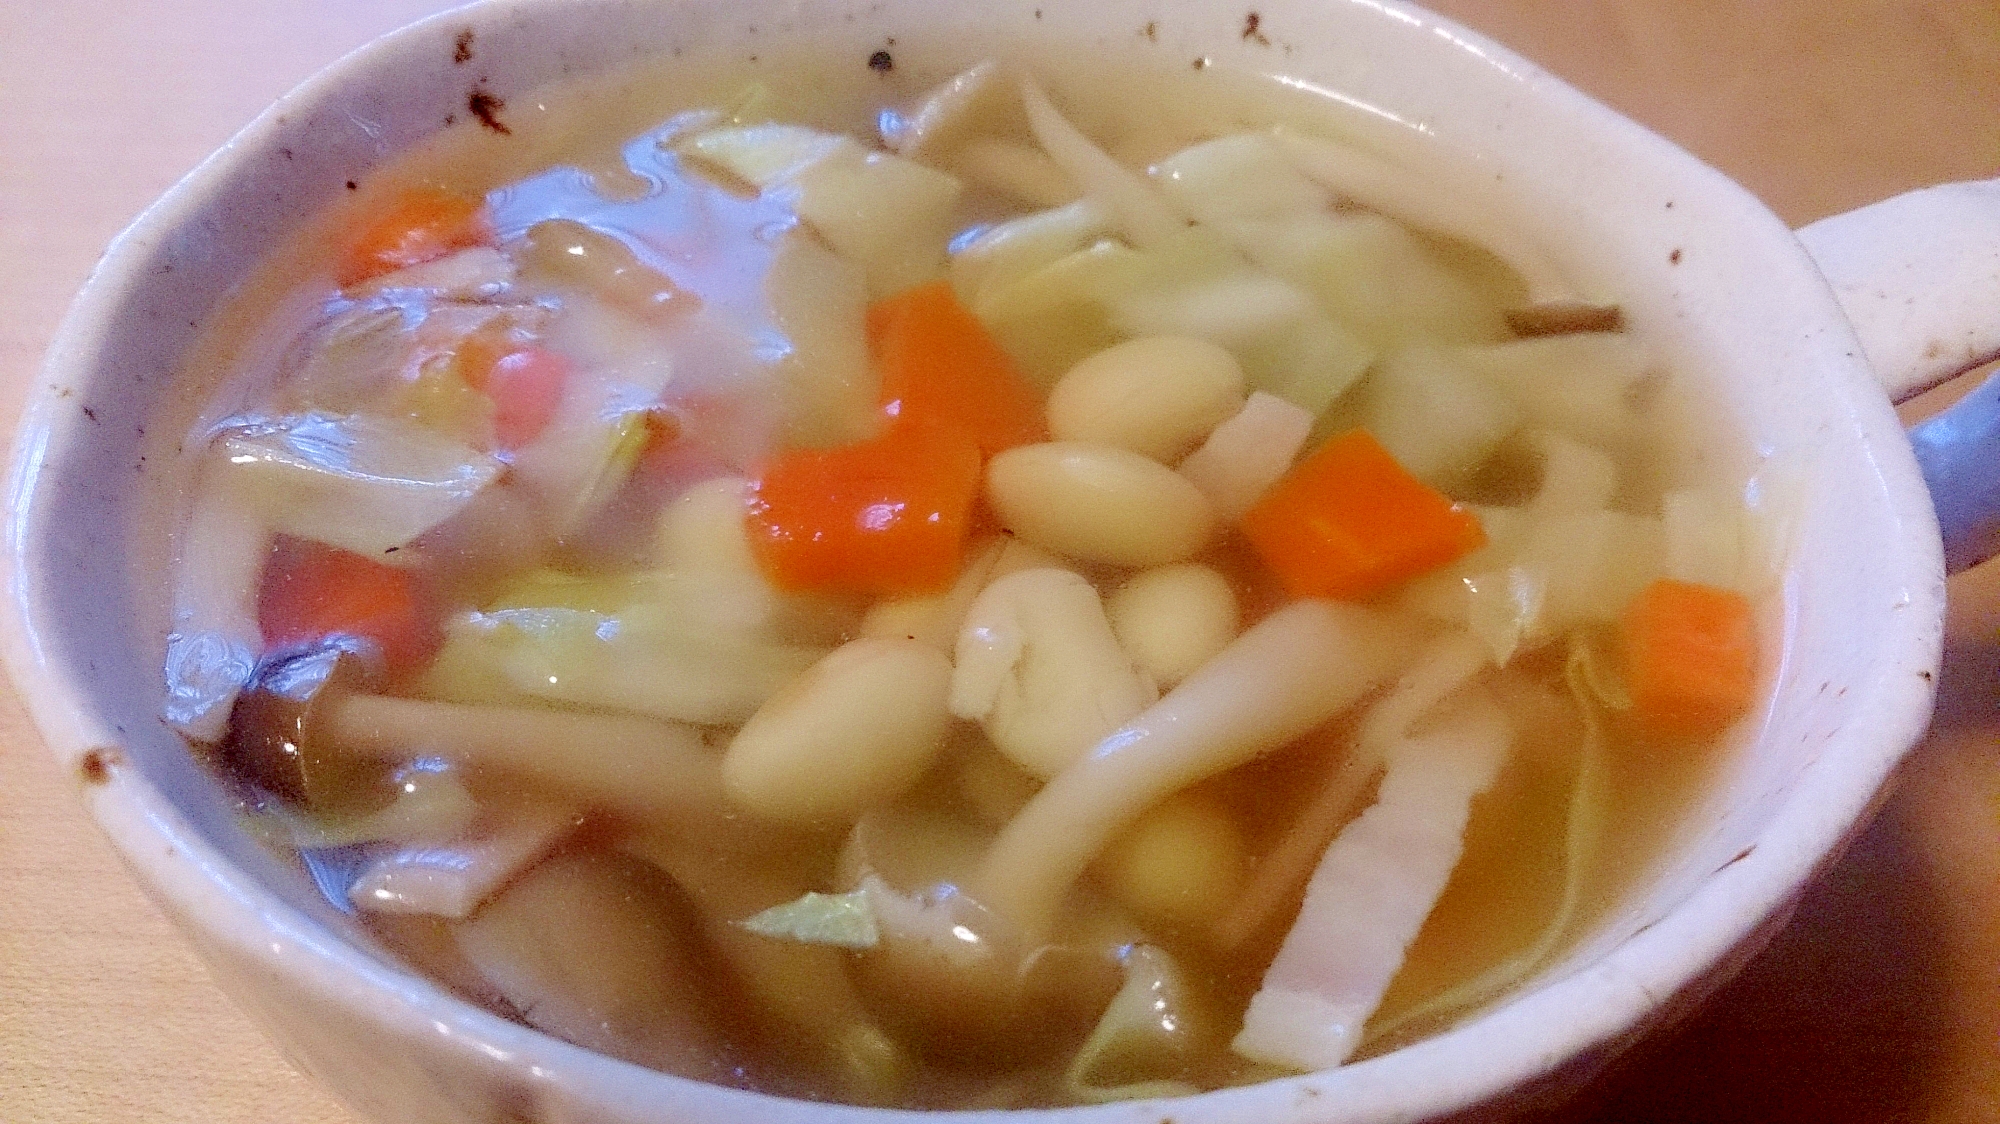 水煮大豆を使った豆スープ